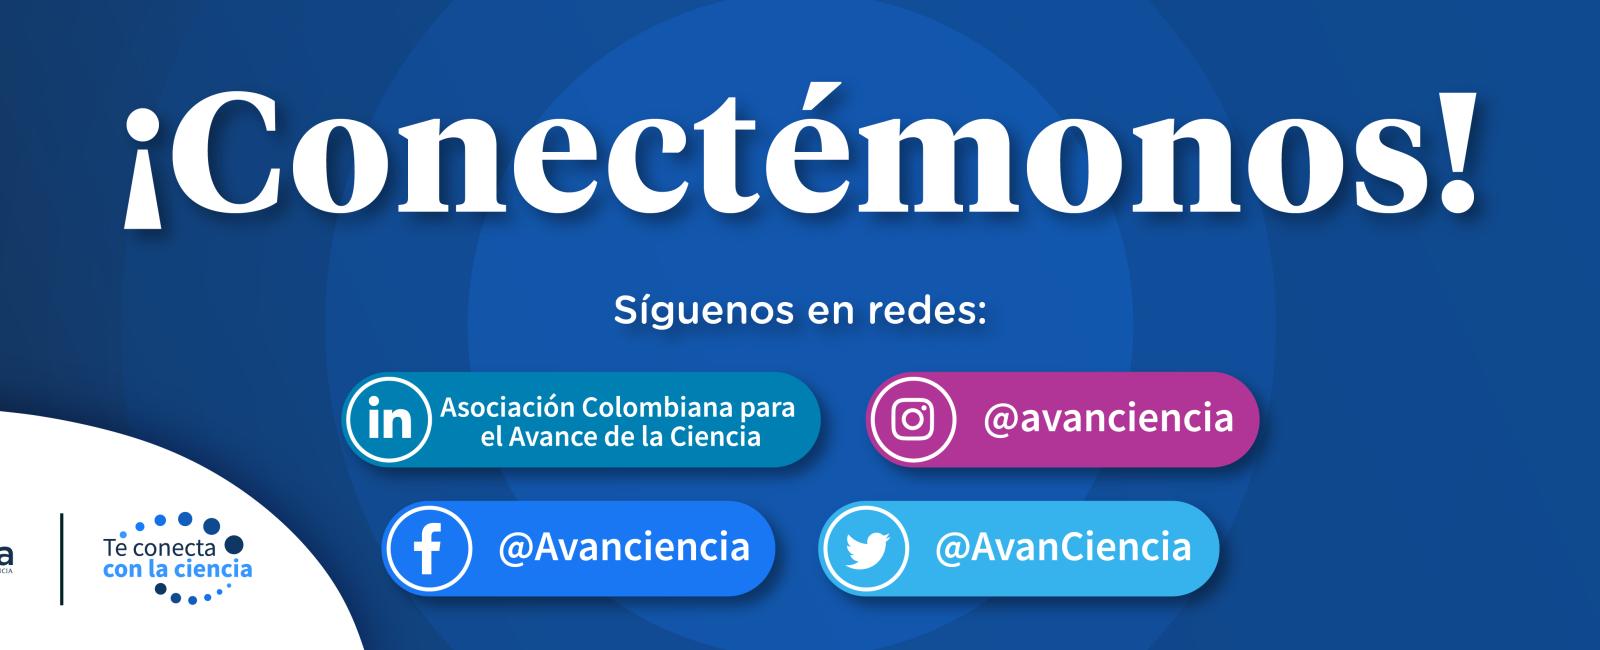 Conectémonos a través de las redes sociales de AvanCiencia